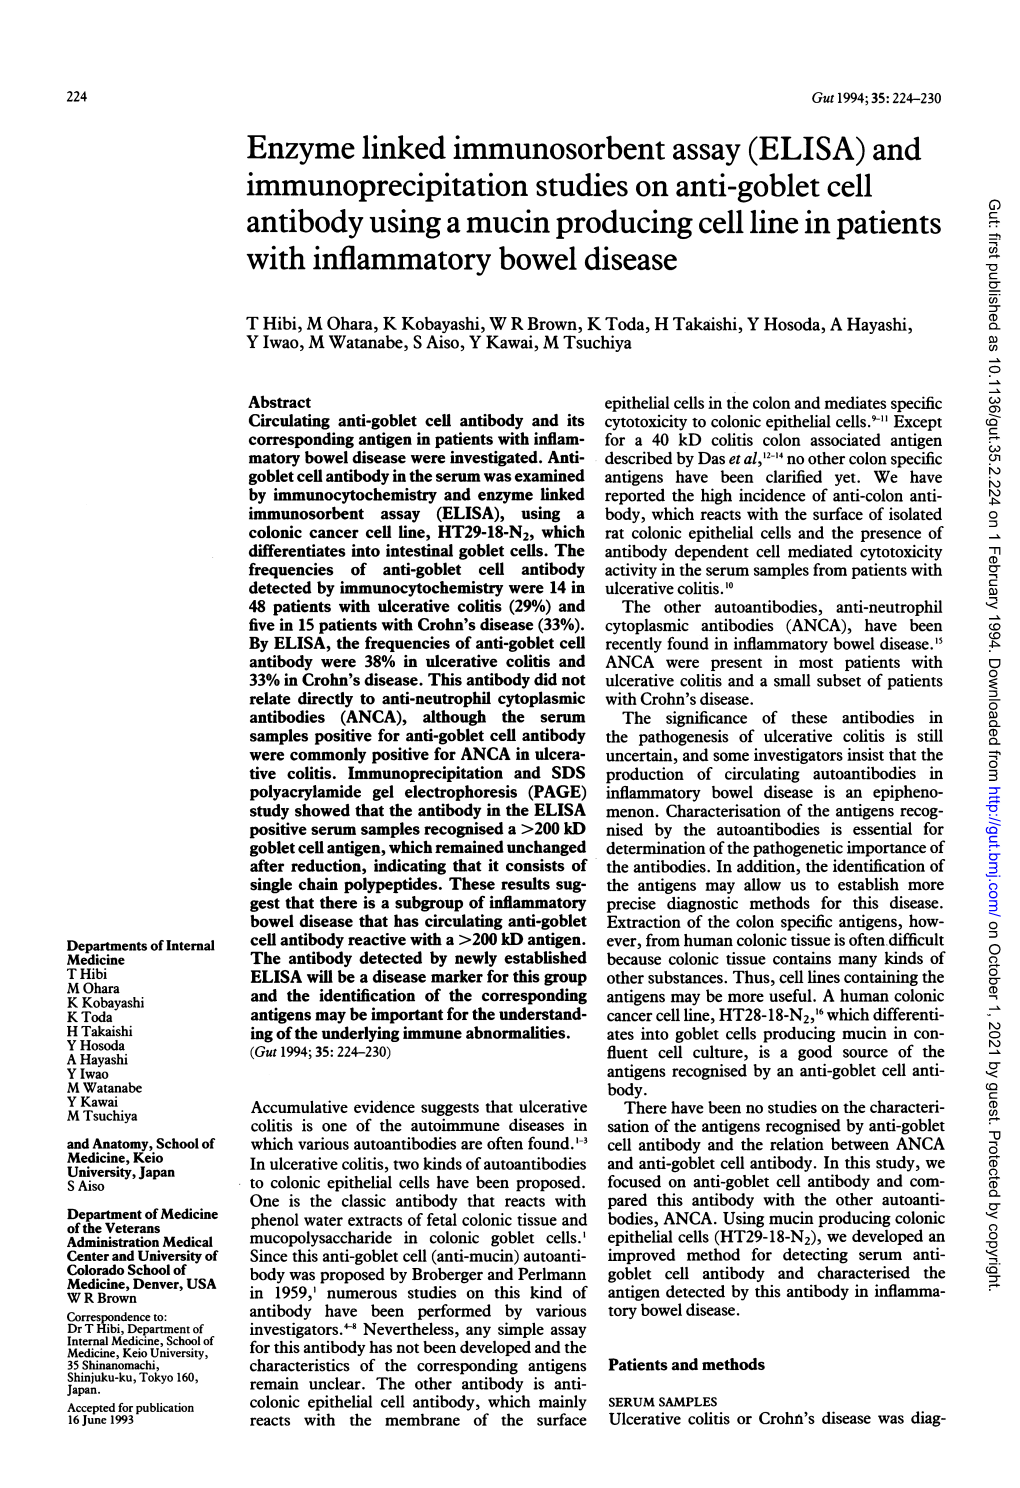 Enzyme Linked Immunosorbent Assay (ELISA) and Immunoprecipitation